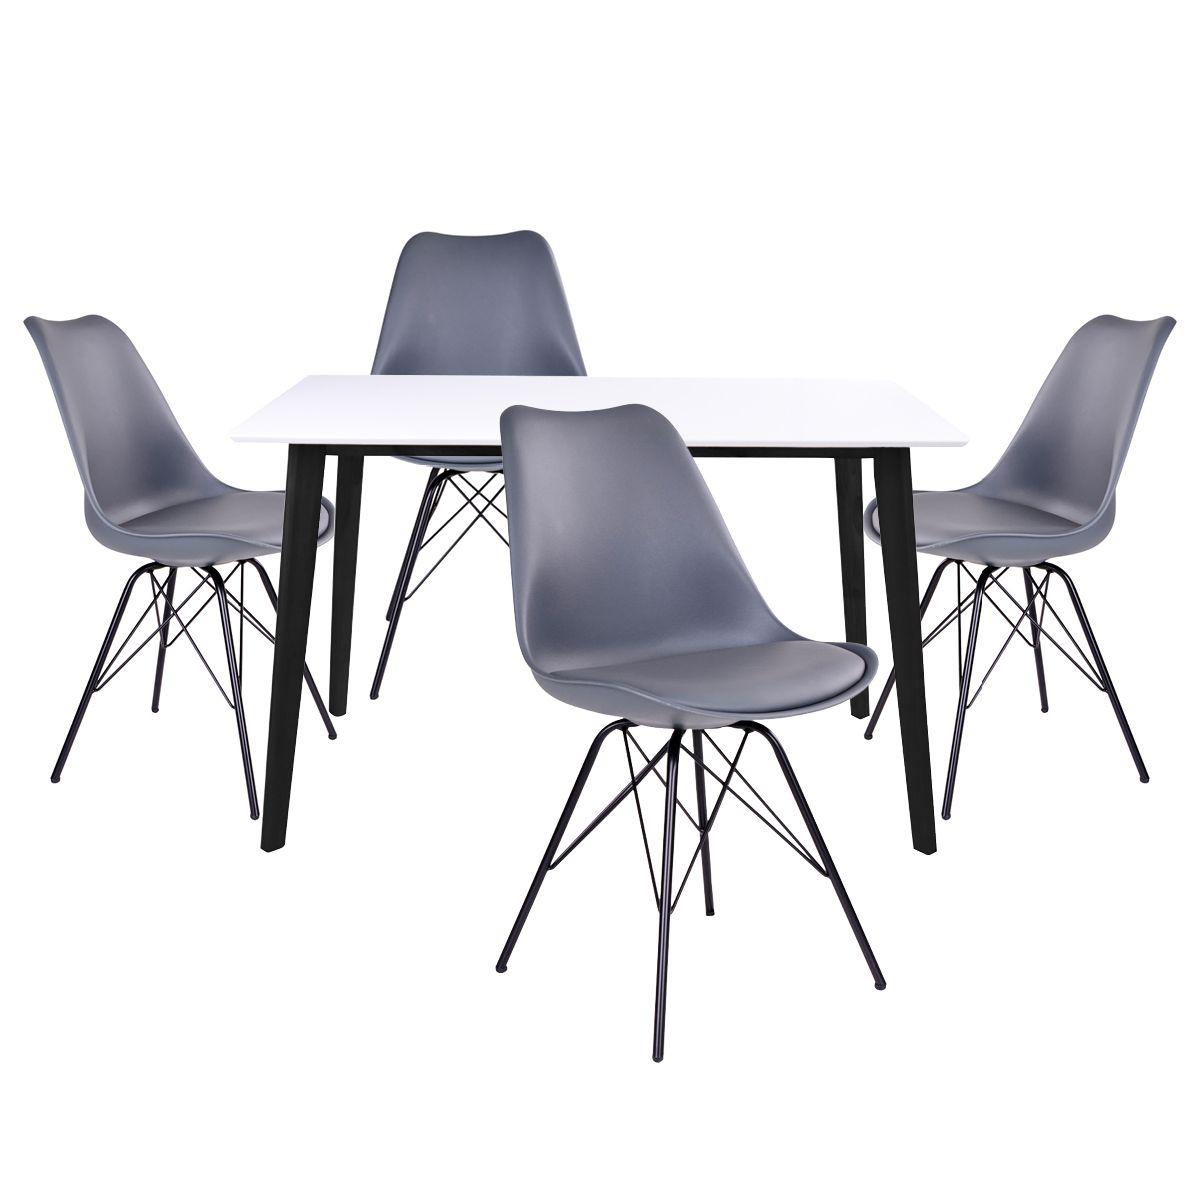 Altobuy - GRAM - Ensemble Table Noire et Blanche + 4 Chaises Grises - Tables à manger